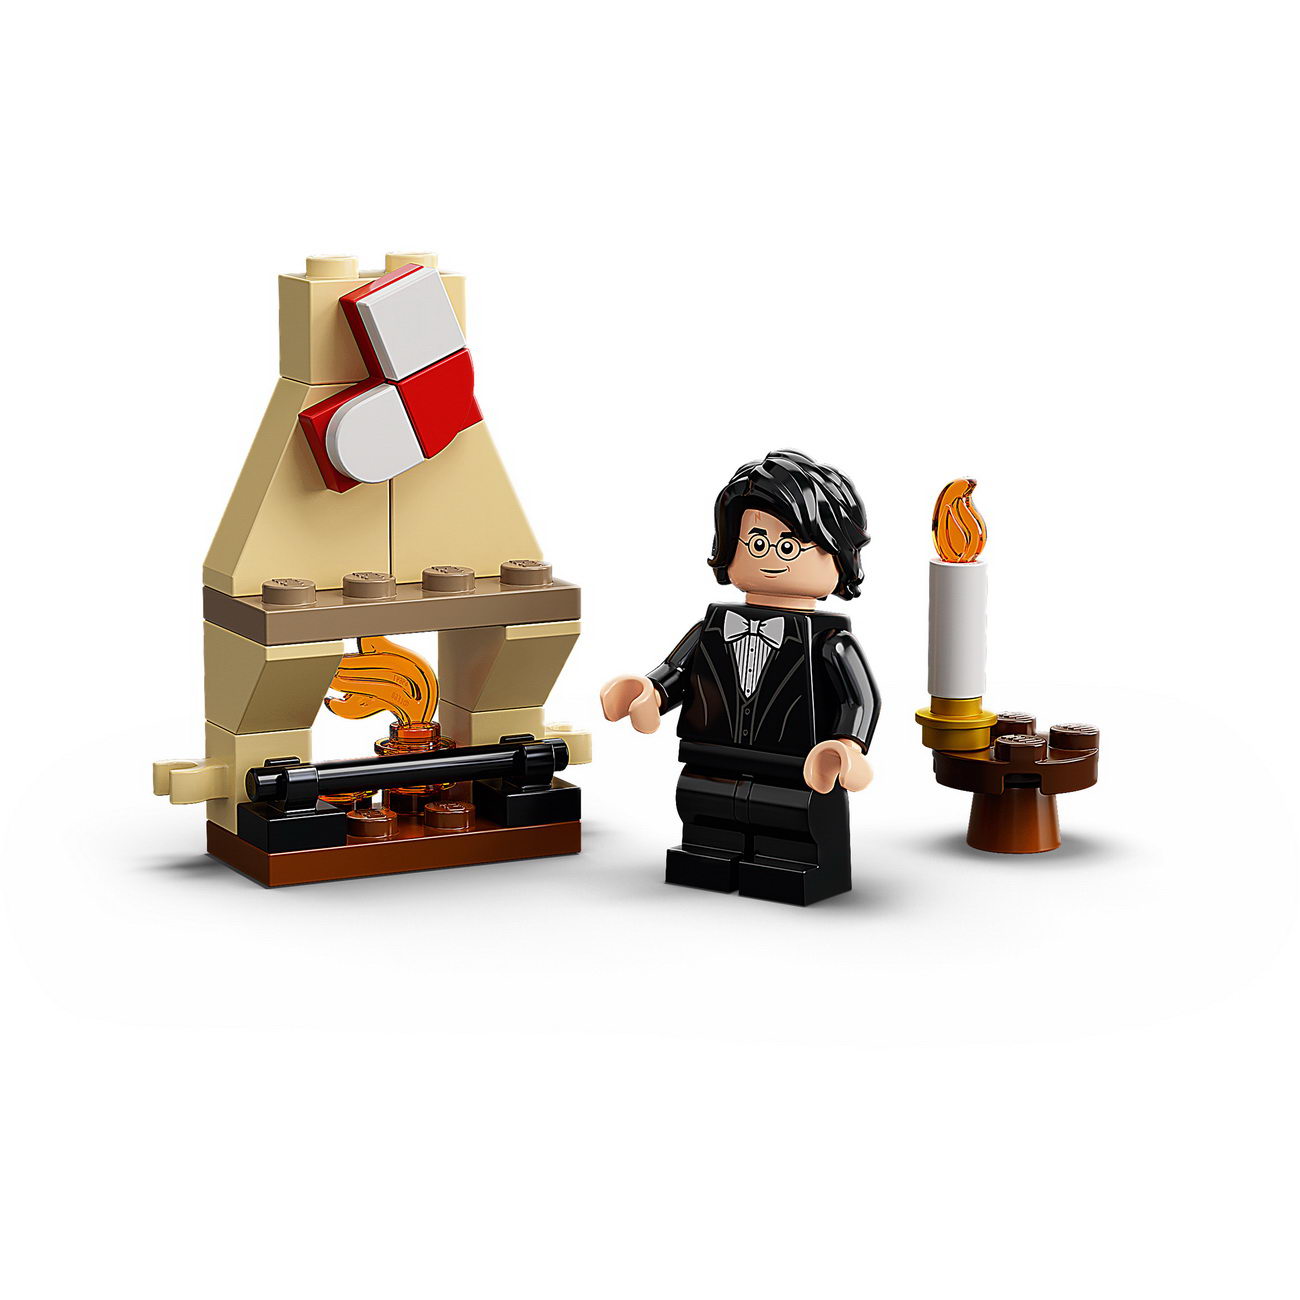 LEGO Harry Potter 75981 - Adventskalender 2020